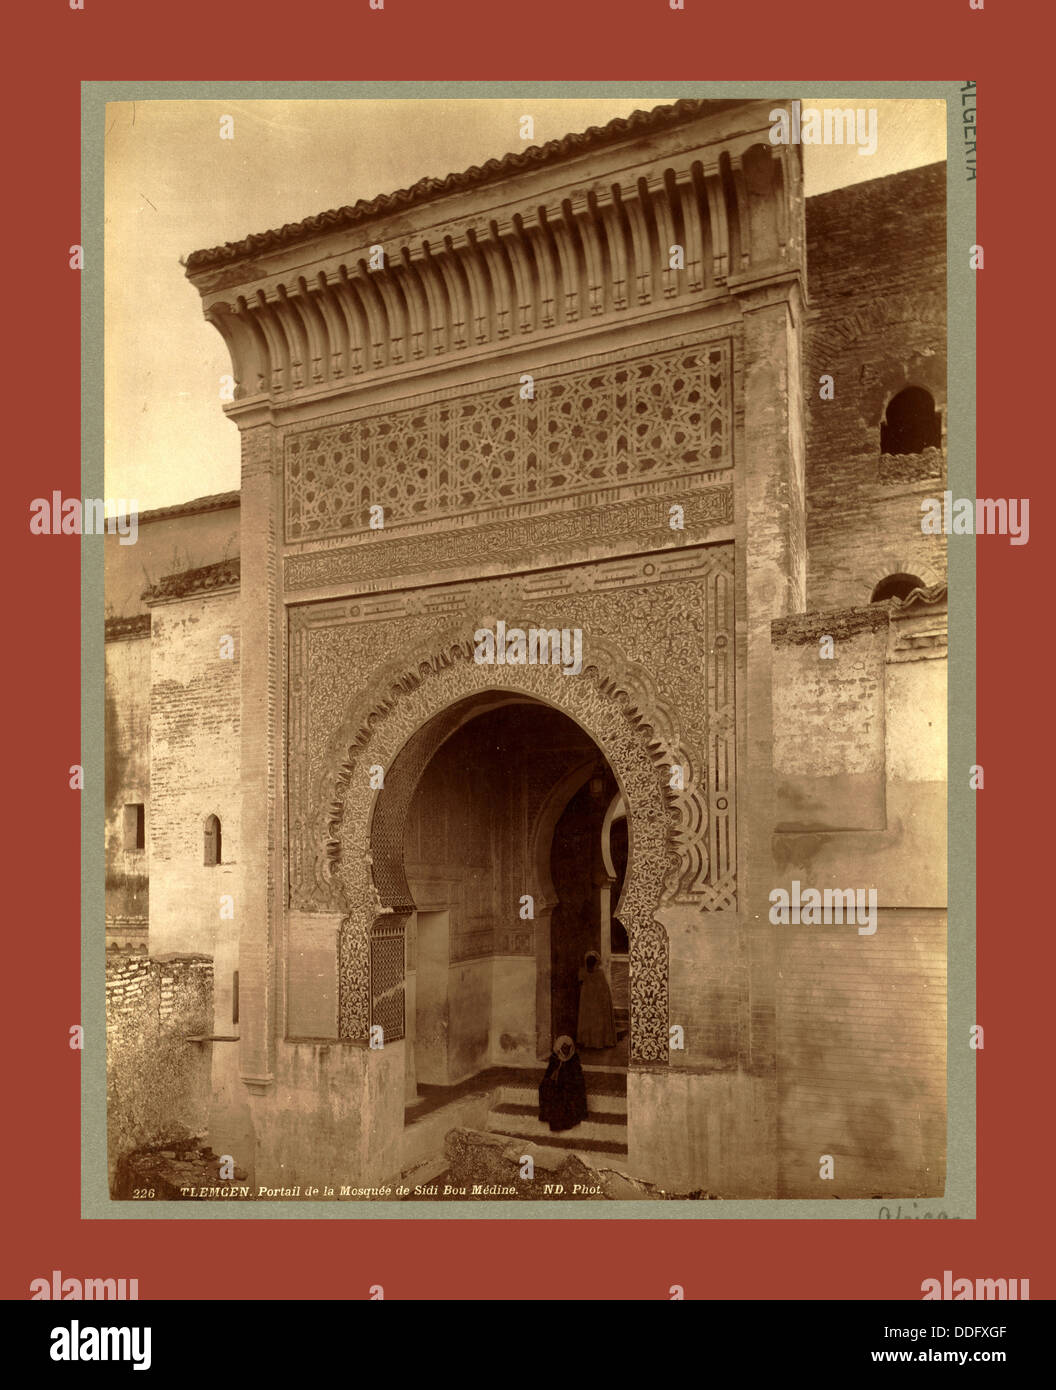 Tlemcen, portail de la mosquée de Sidi Bou Médine, Alger, Neurdein frères 1860, 1890 Photographies de l'Algérie les Neurdein Banque D'Images